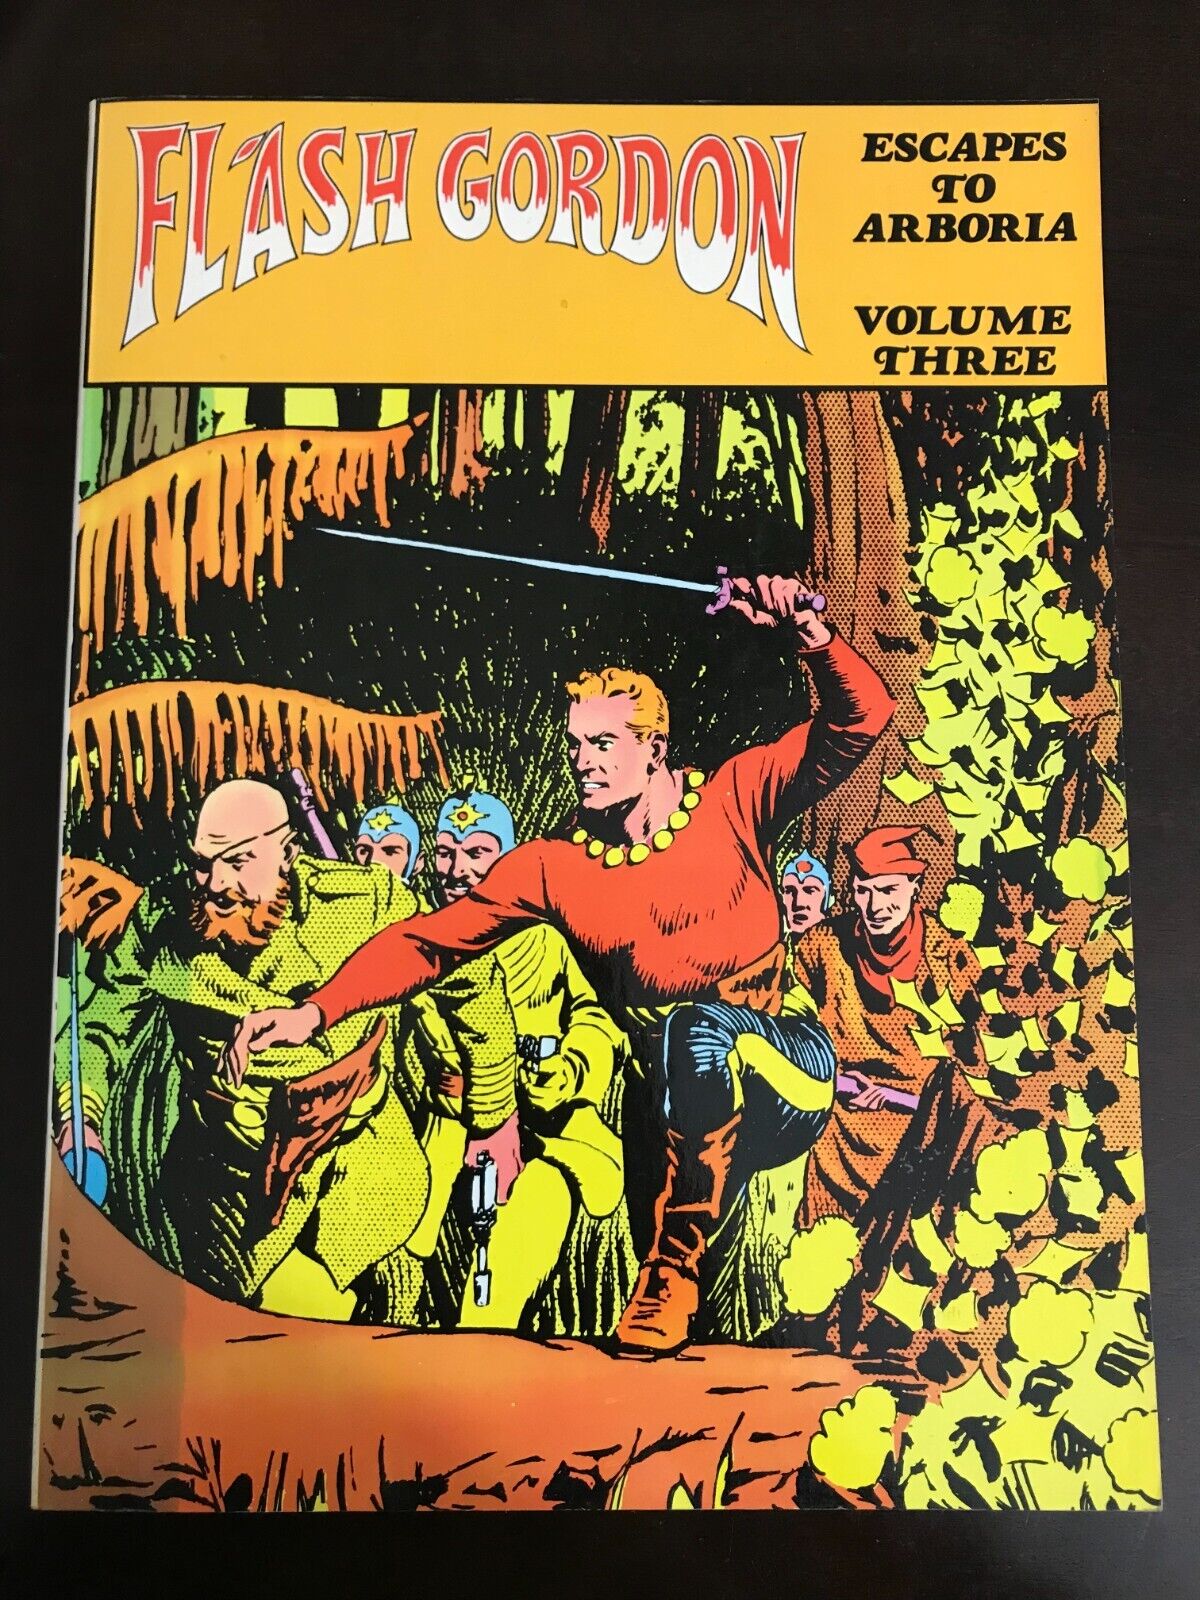 Flash Gordon: Escape to Arboria Vol. 3 Alex Raymond - Nostalgia Press paperbound